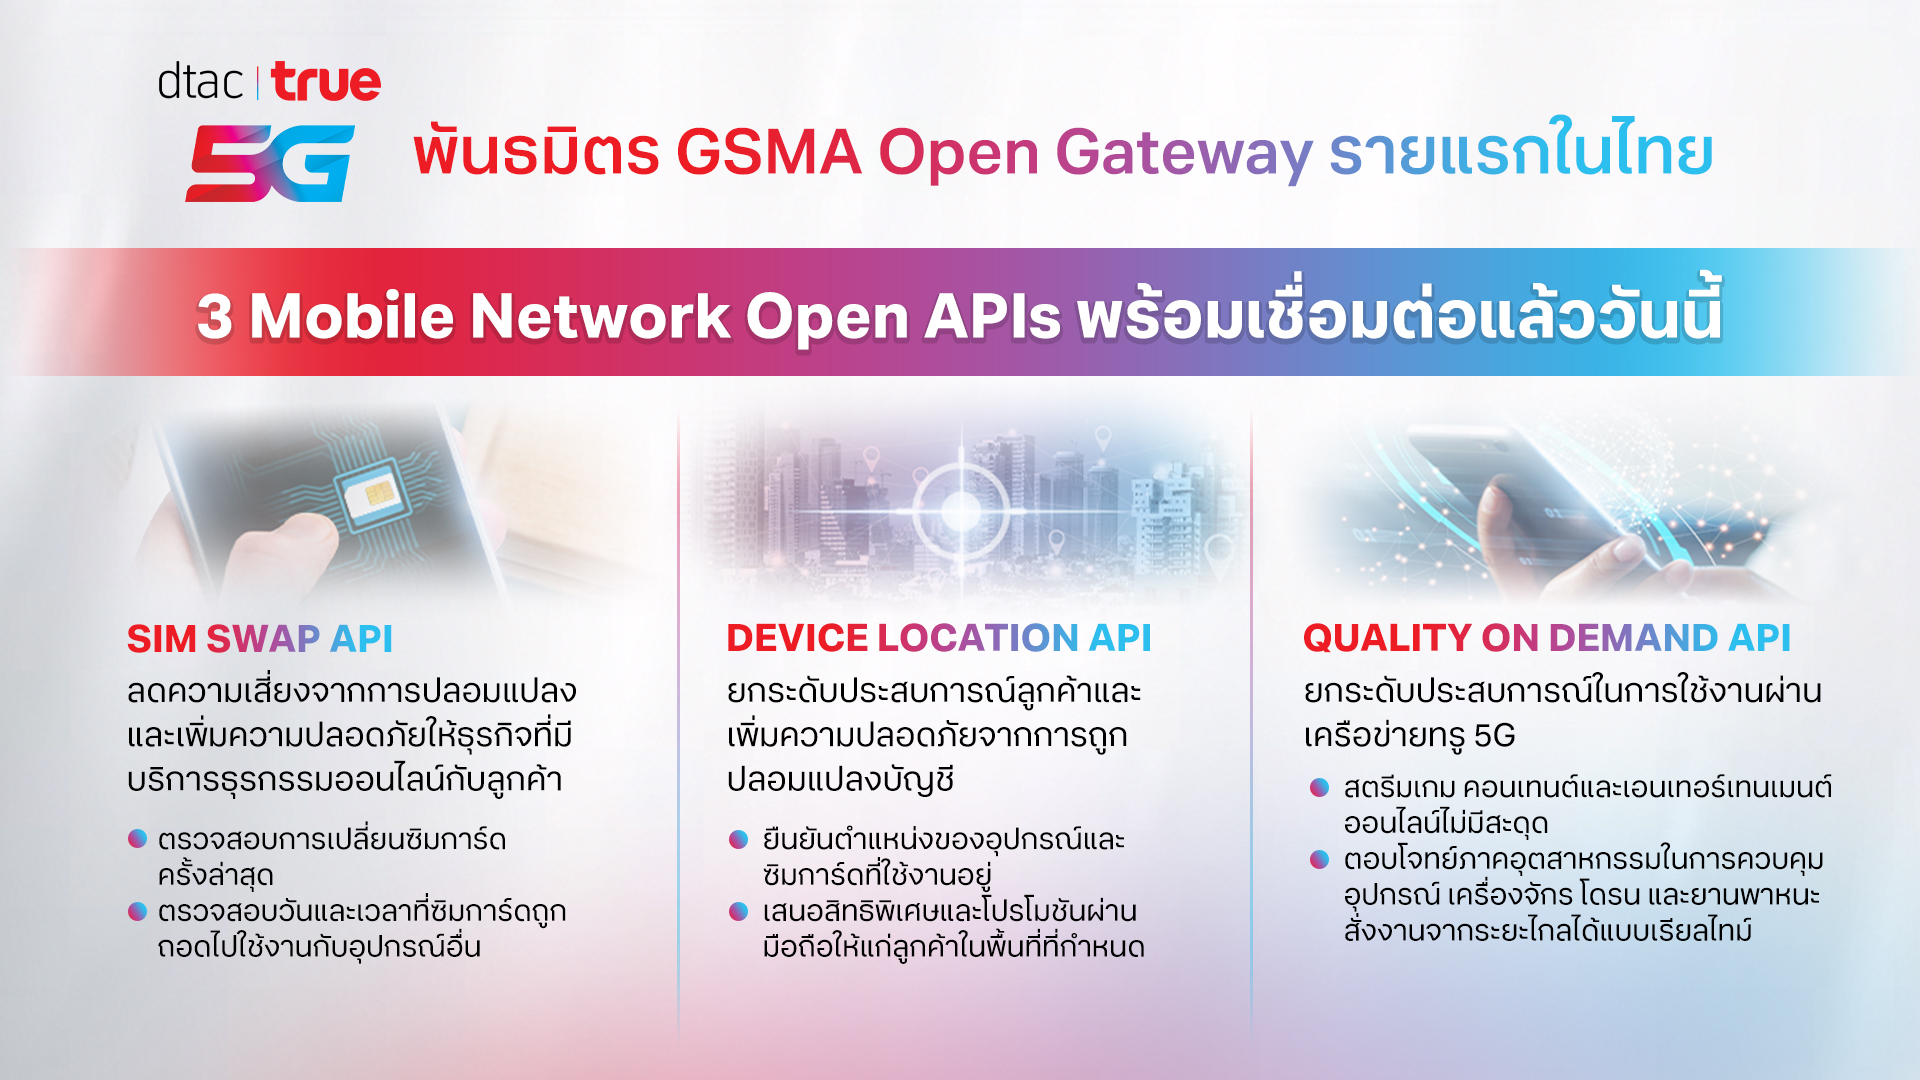 ทรู เปิดตัว SIM Swap, Device Location และ Quality on Demand API มาตรฐานโลก